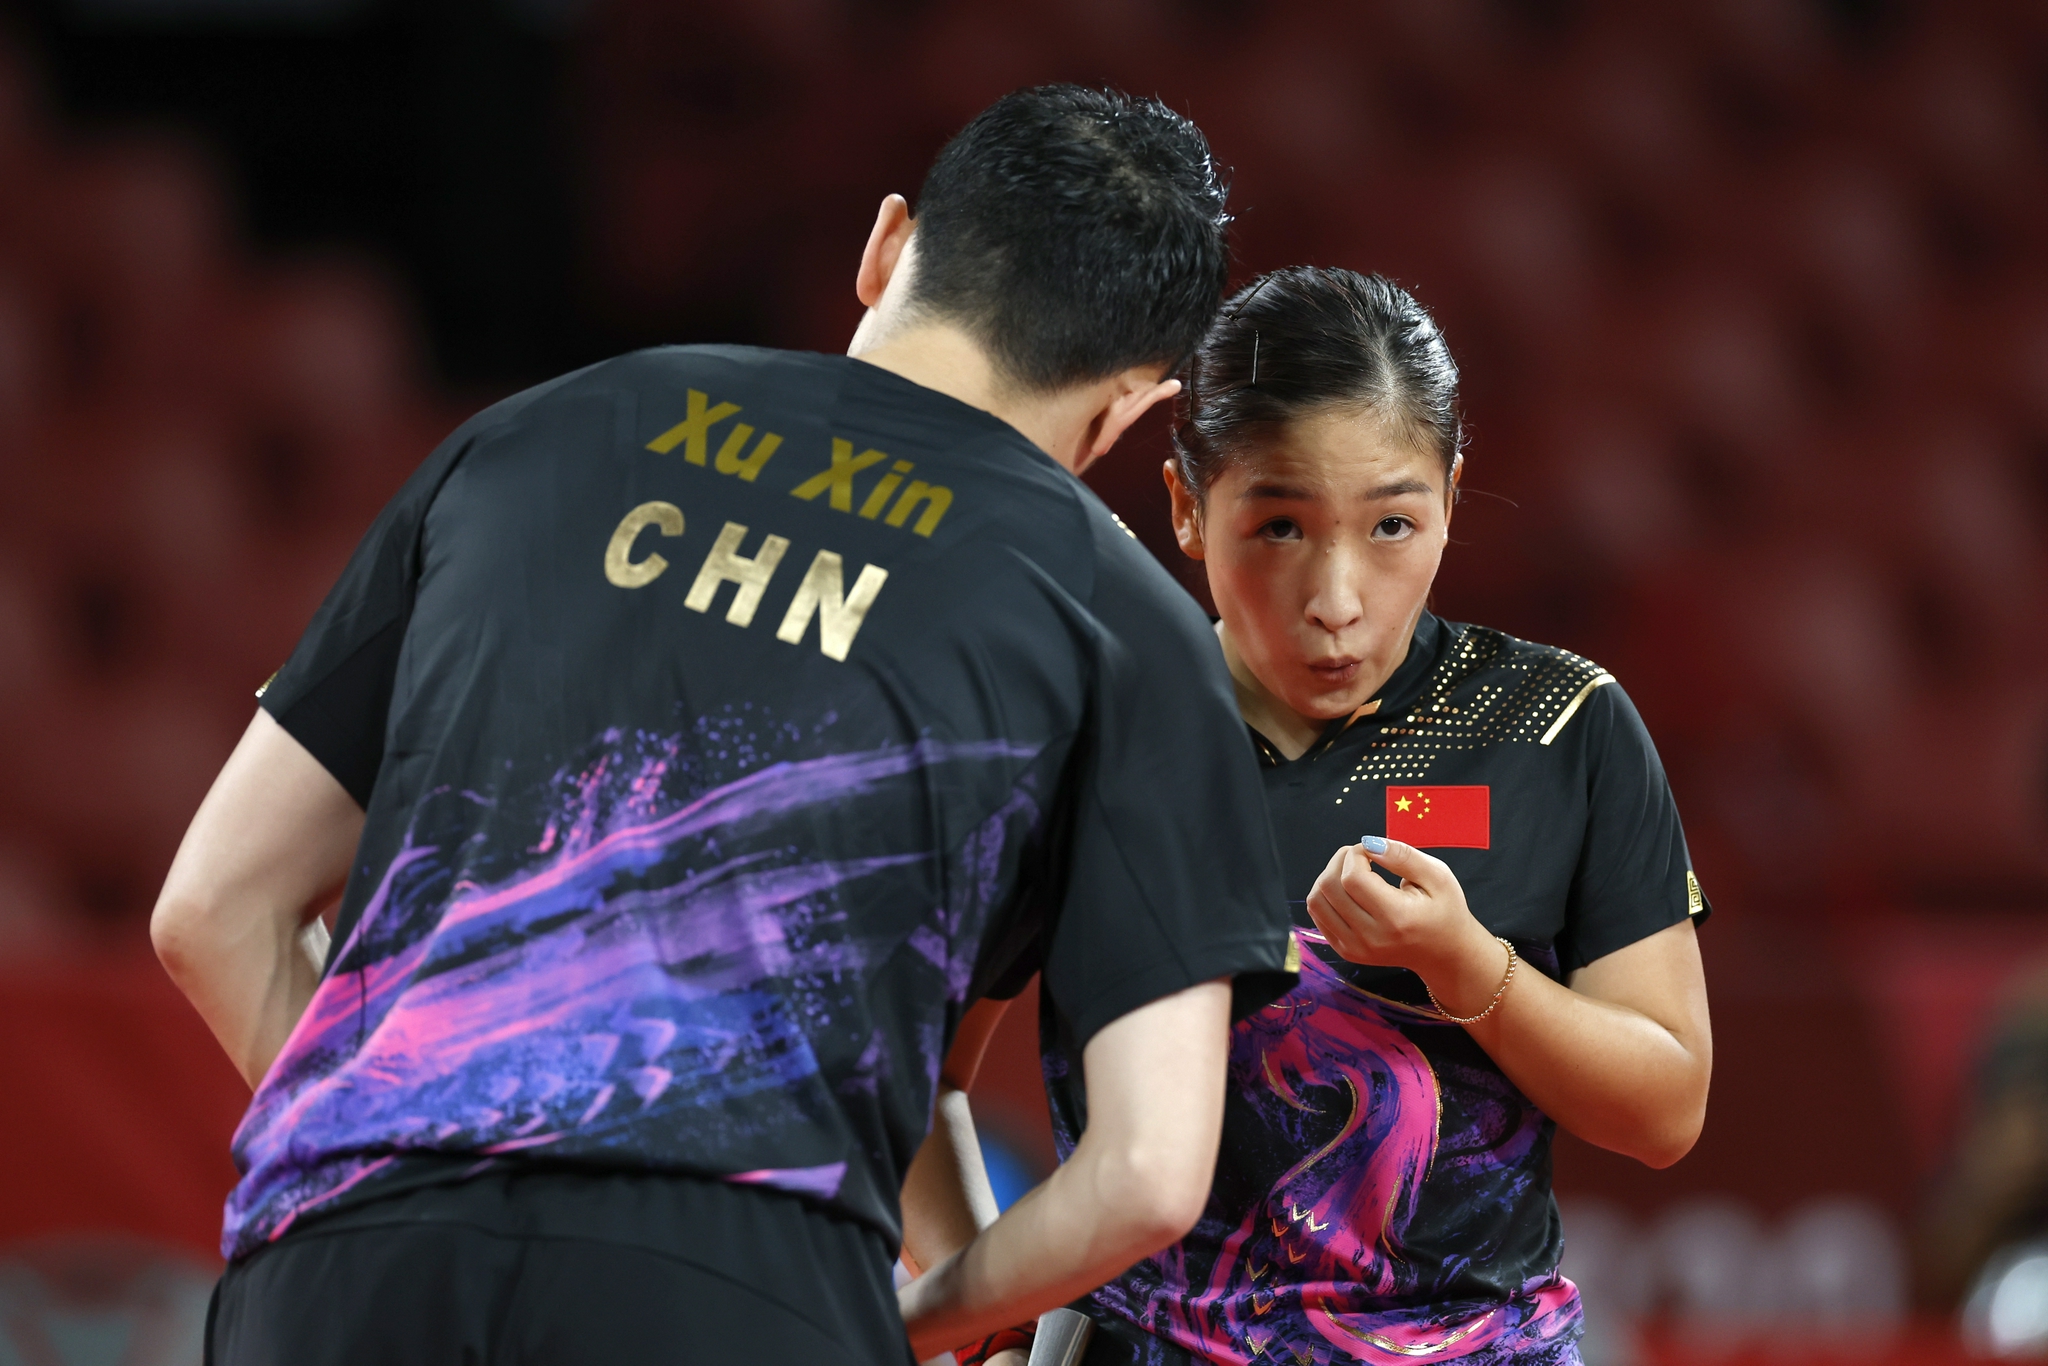 许昕和刘诗雯组合在东京奥运会。